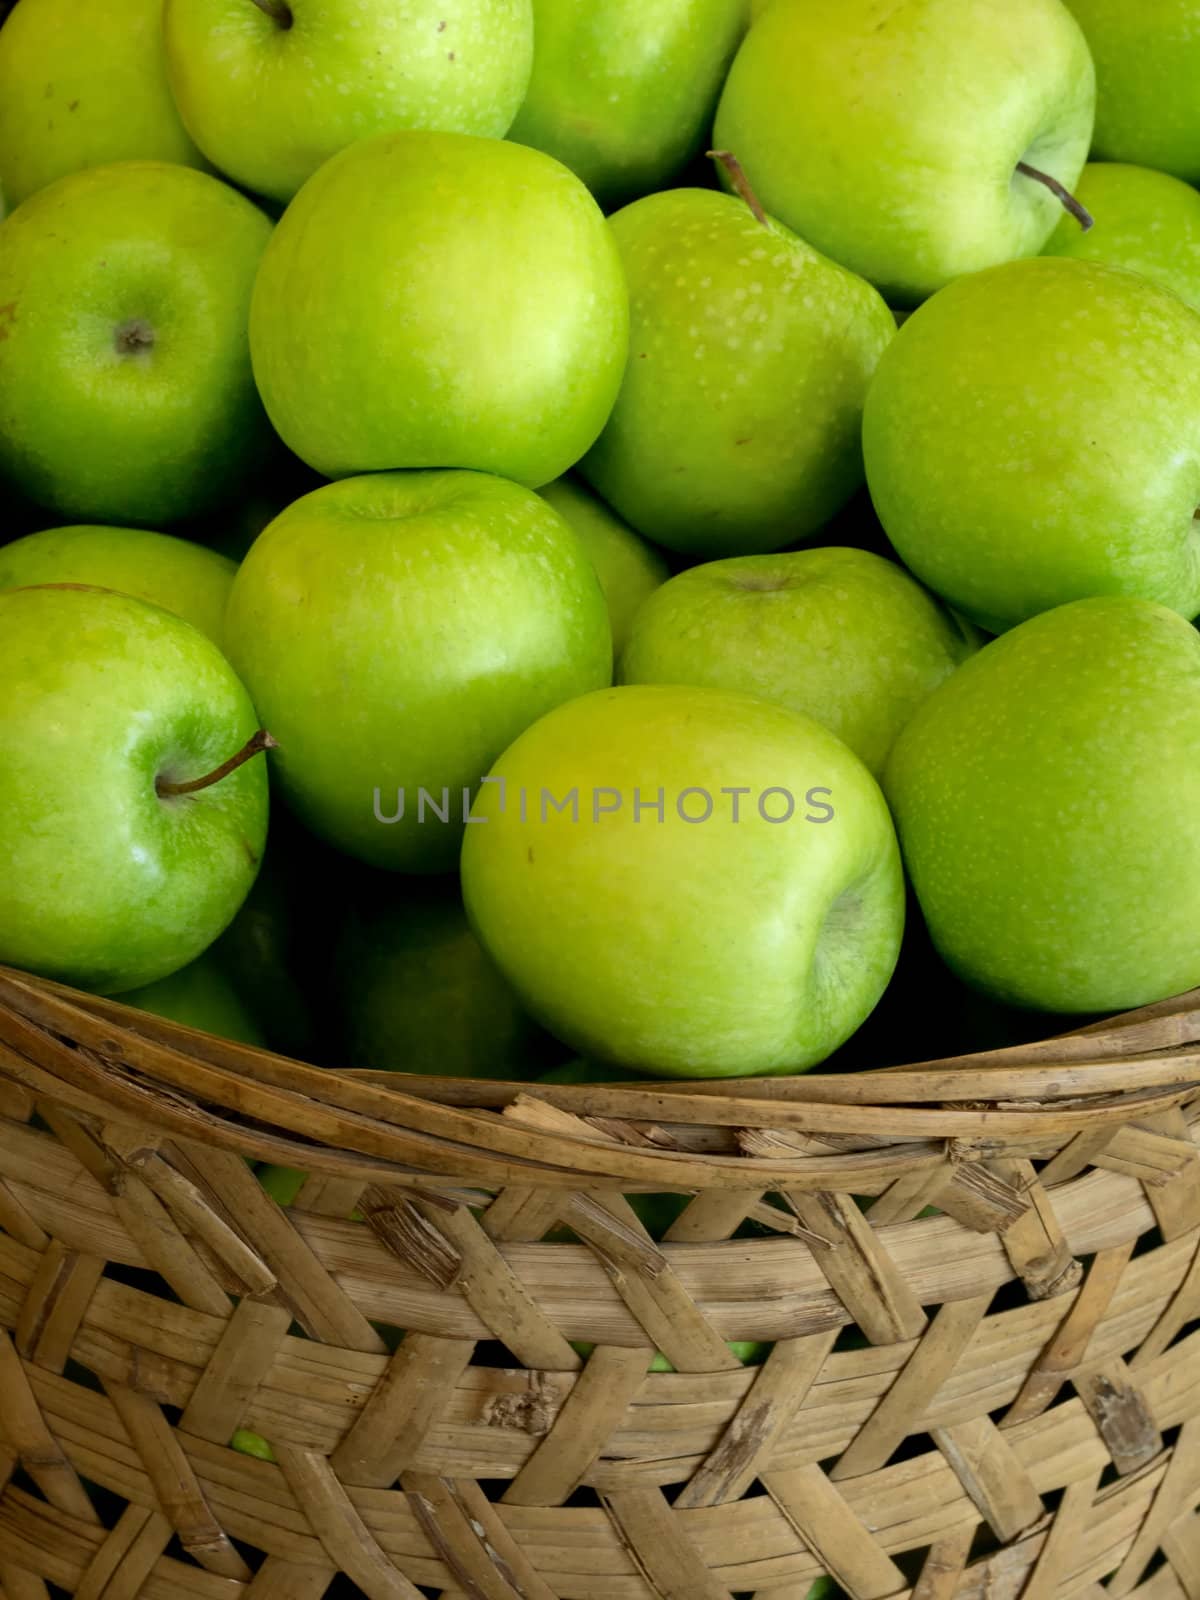 basket of green apples by zkruger